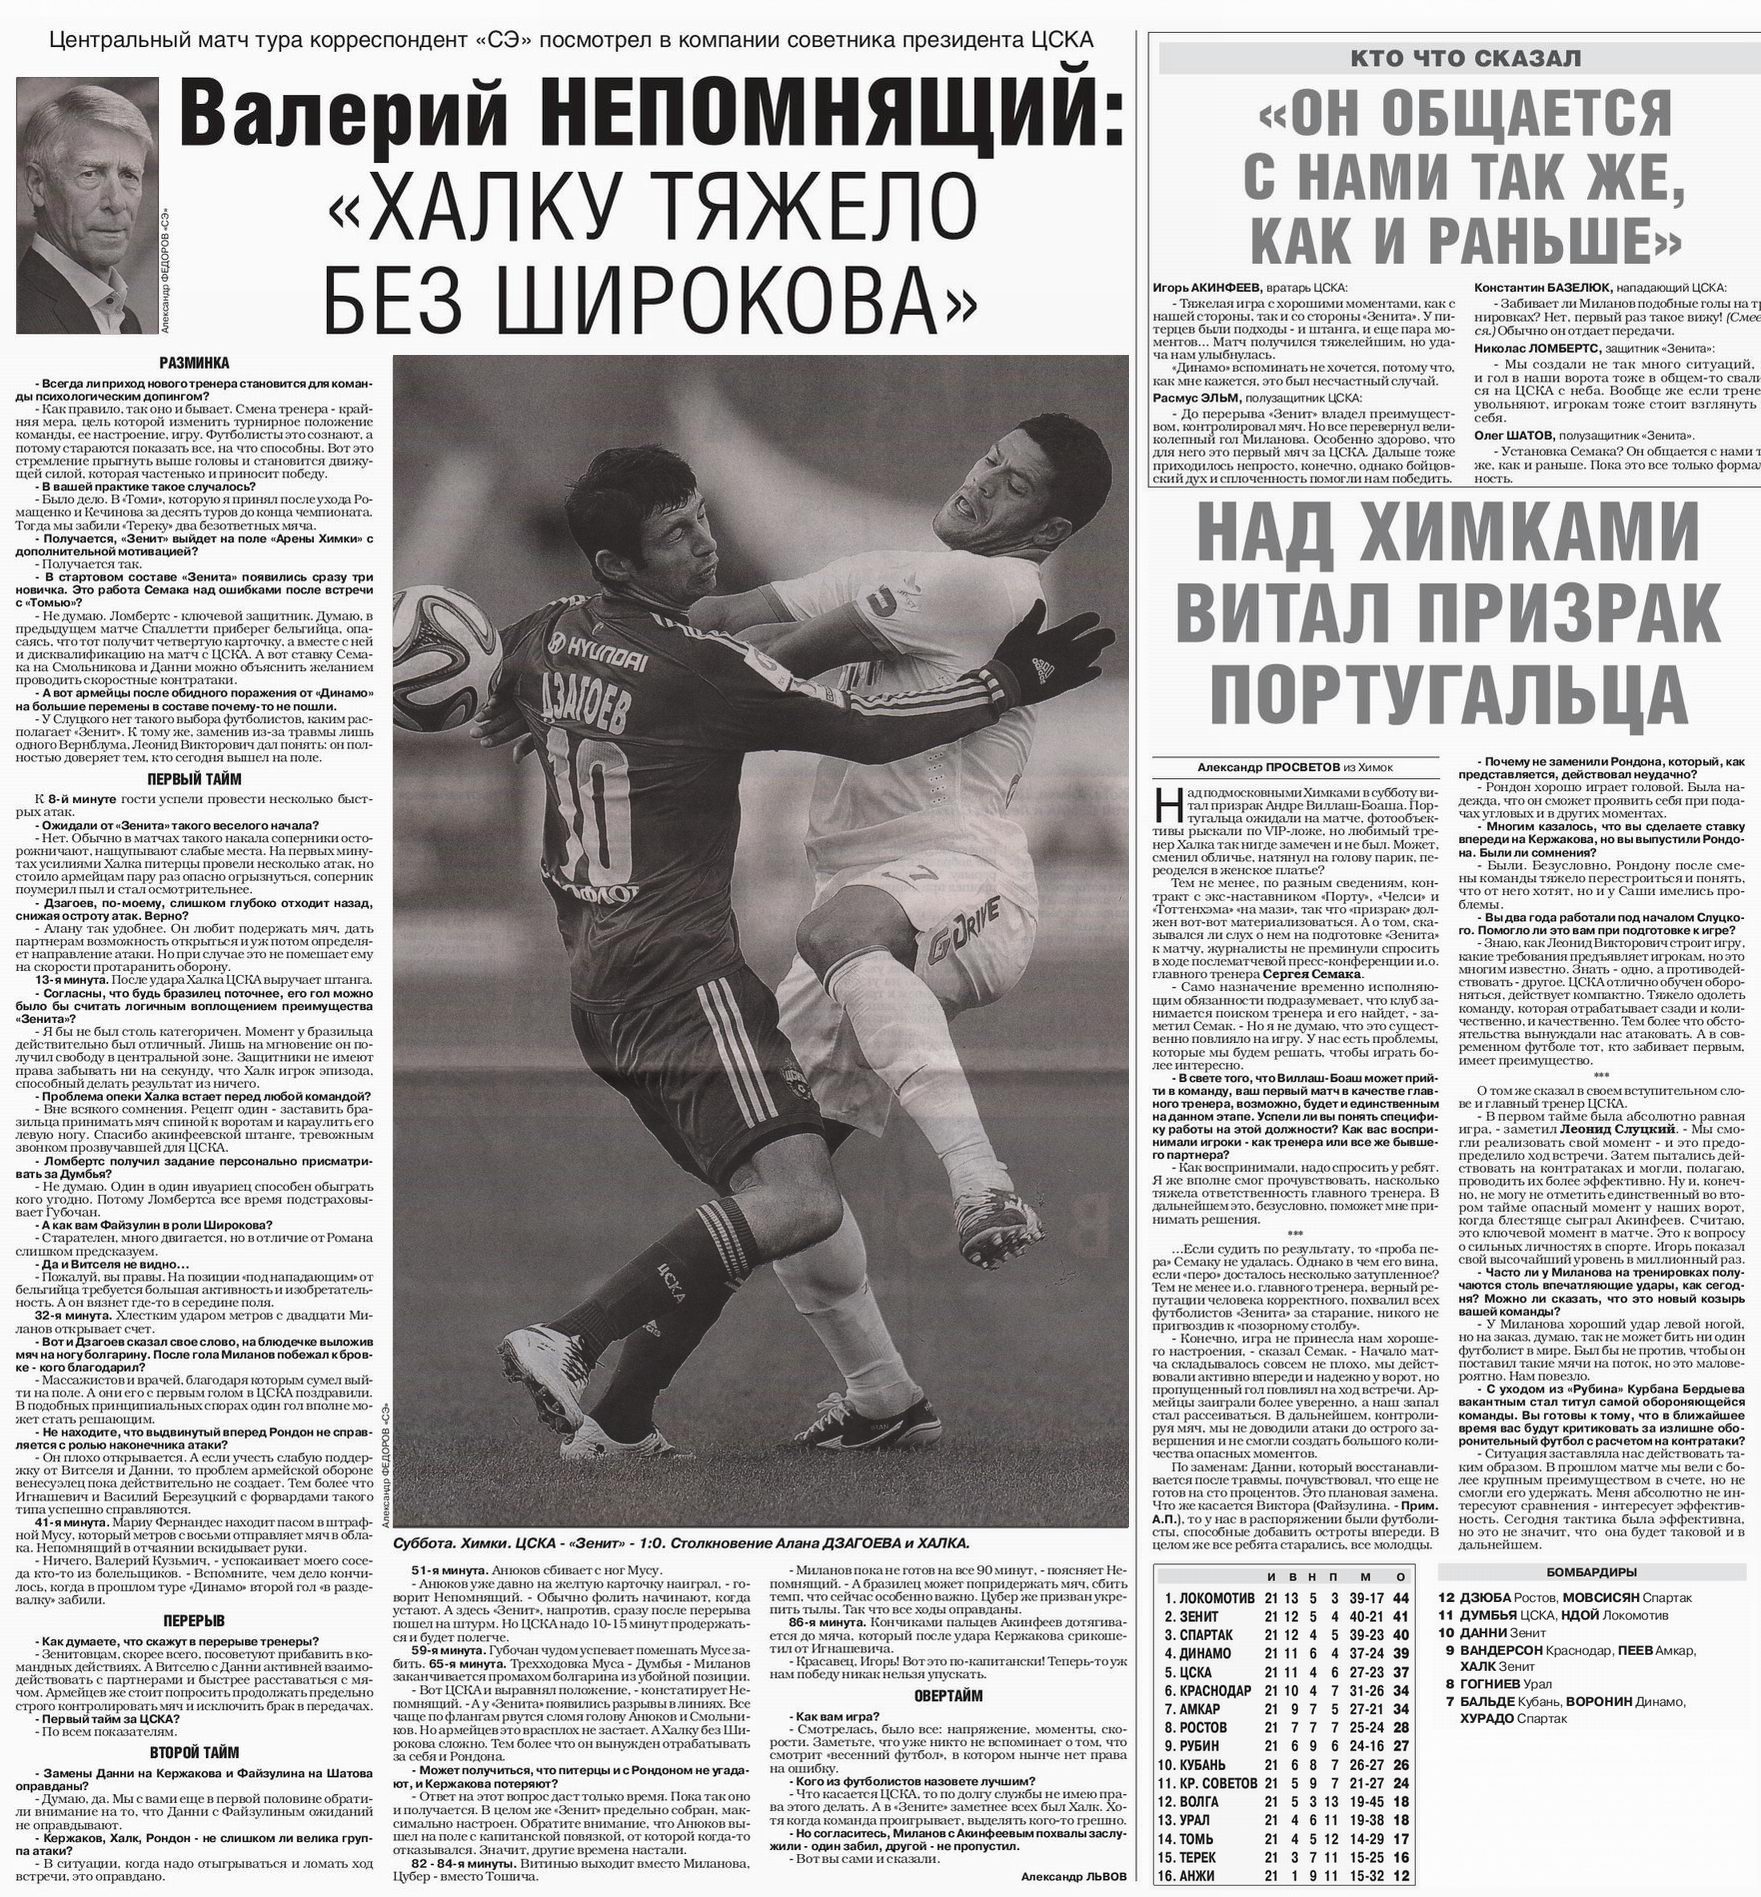 2014-03-15.CSKA-Zenit.1